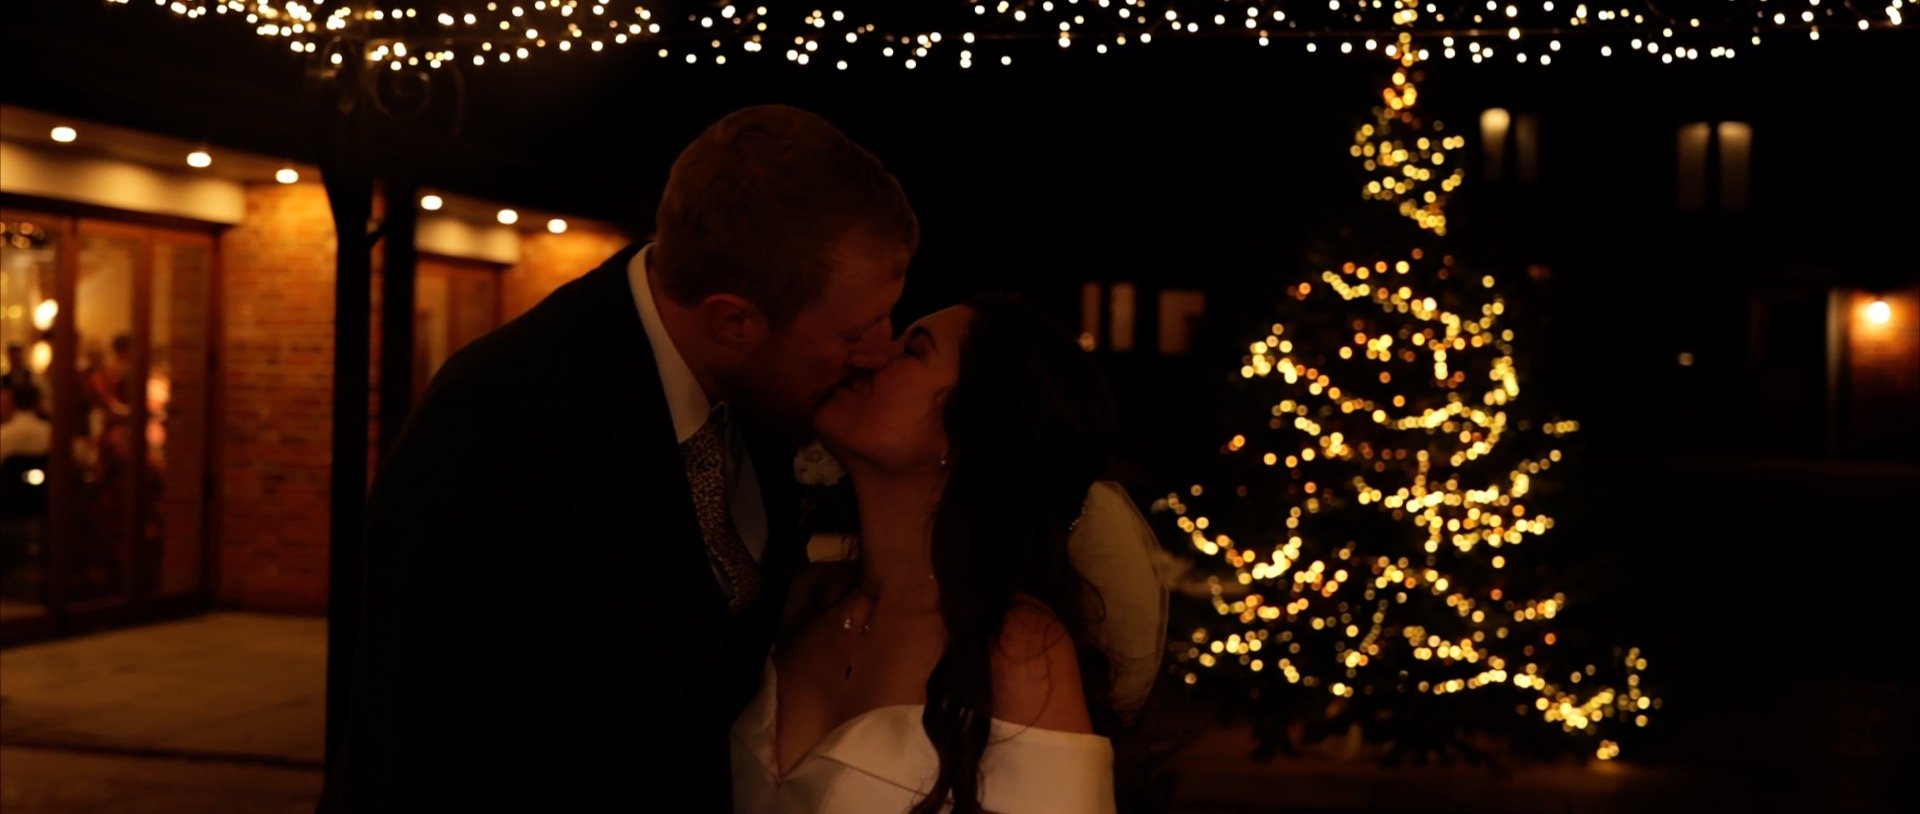 Apton Hall Wedding Videography - 3 Cheers Media - Christmas wedding kiss.jpg